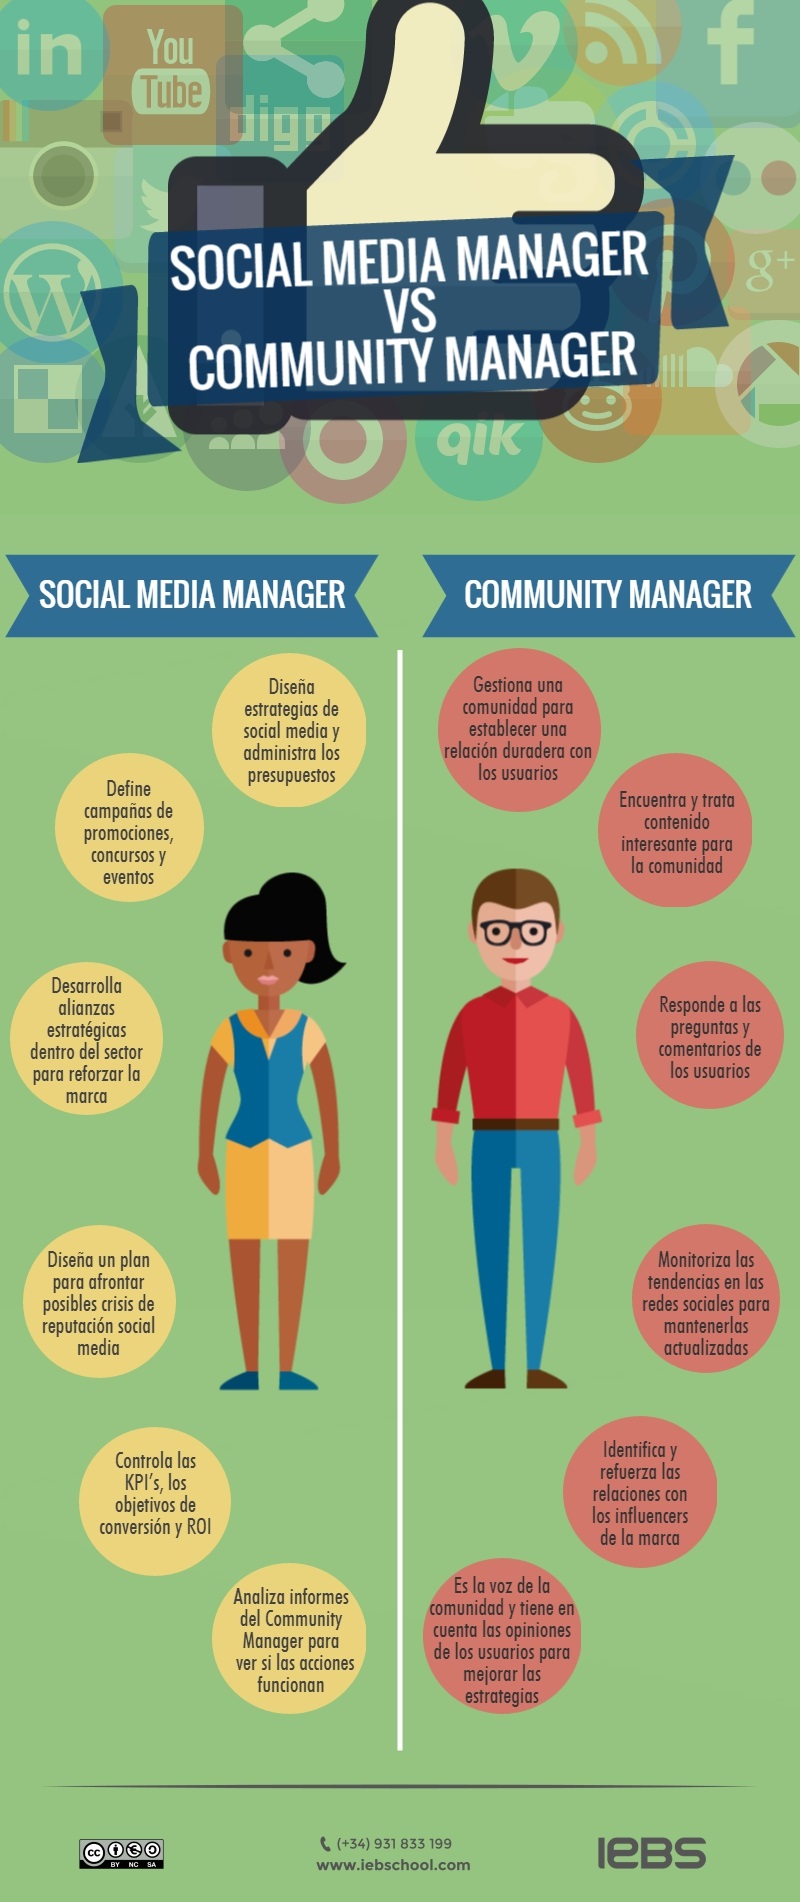 Poner a prueba o probar El propietario División Social Media Manager vs Community Manager: ¿Son lo mismo?